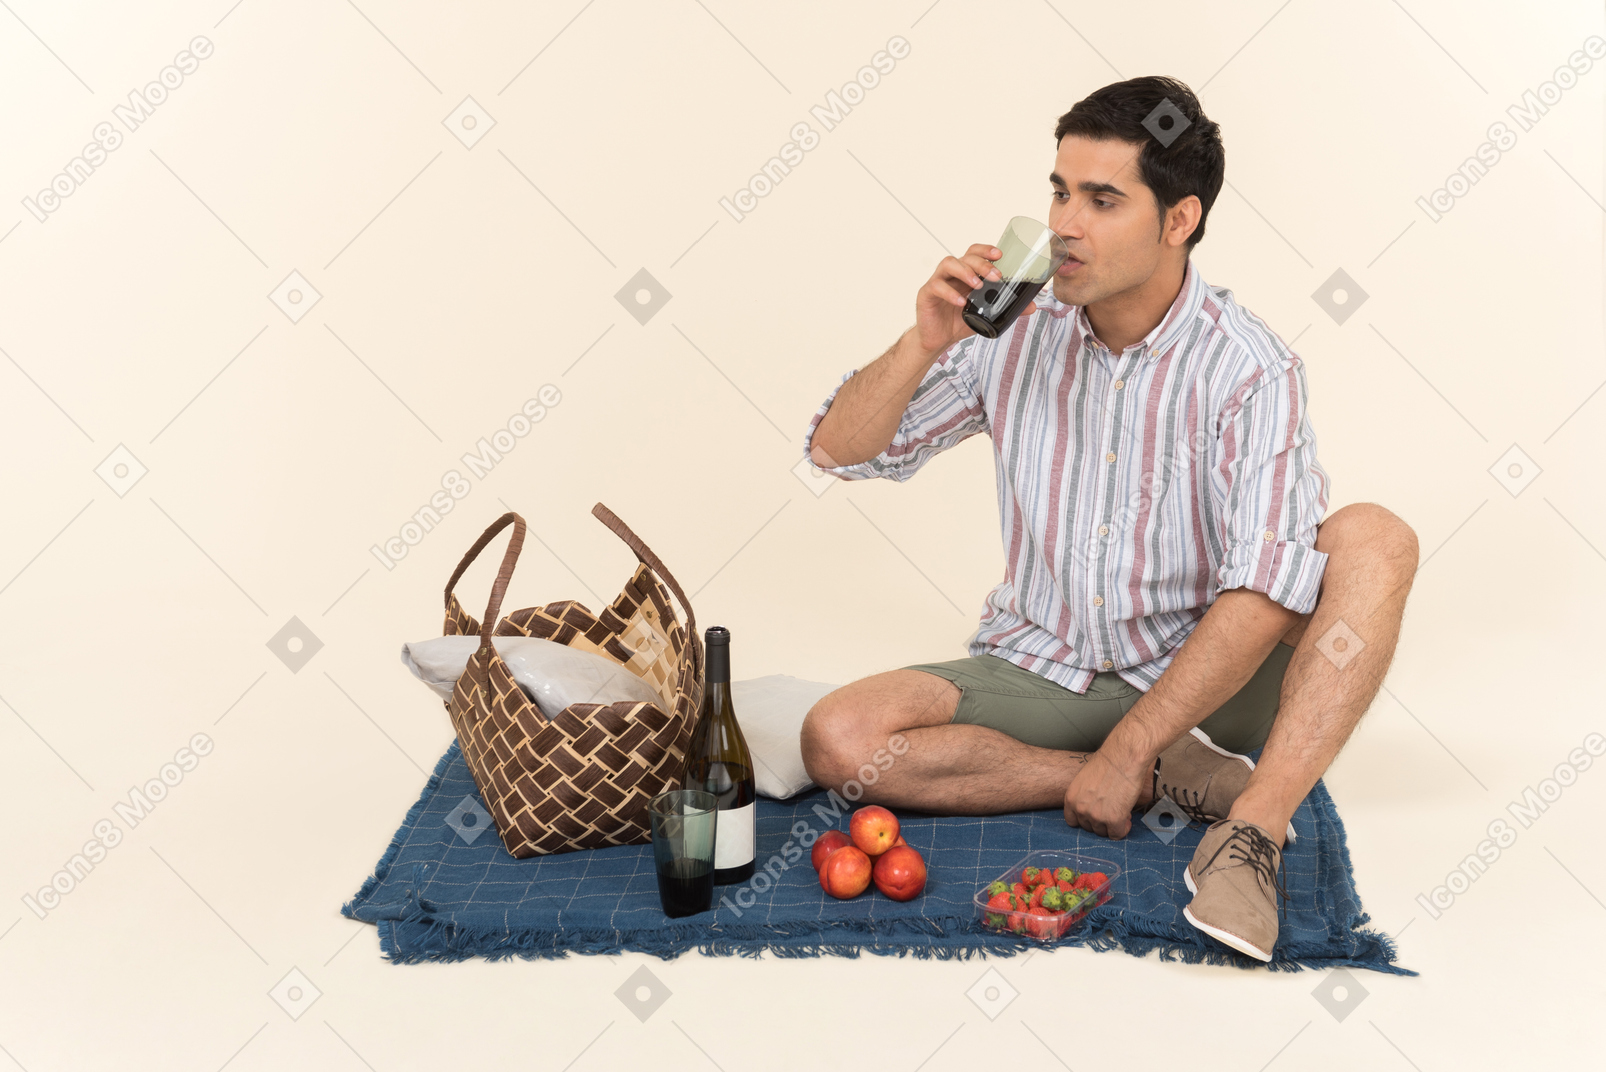 Junger kaukasischer mann, der auf decke sitzt und wein trinkt